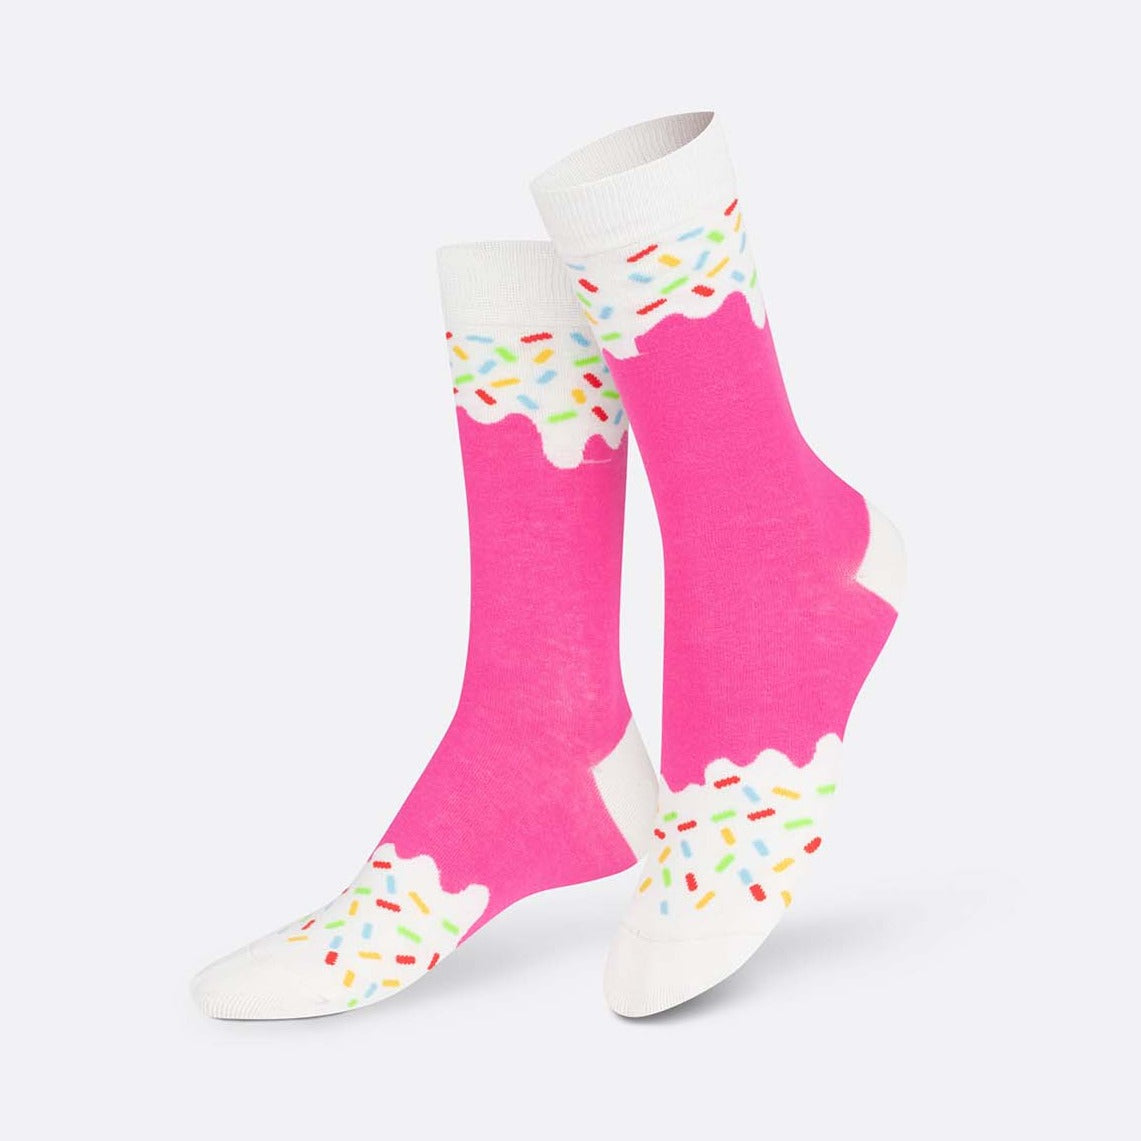 Eat My Socks: Frozen Pop Strawberry Socks